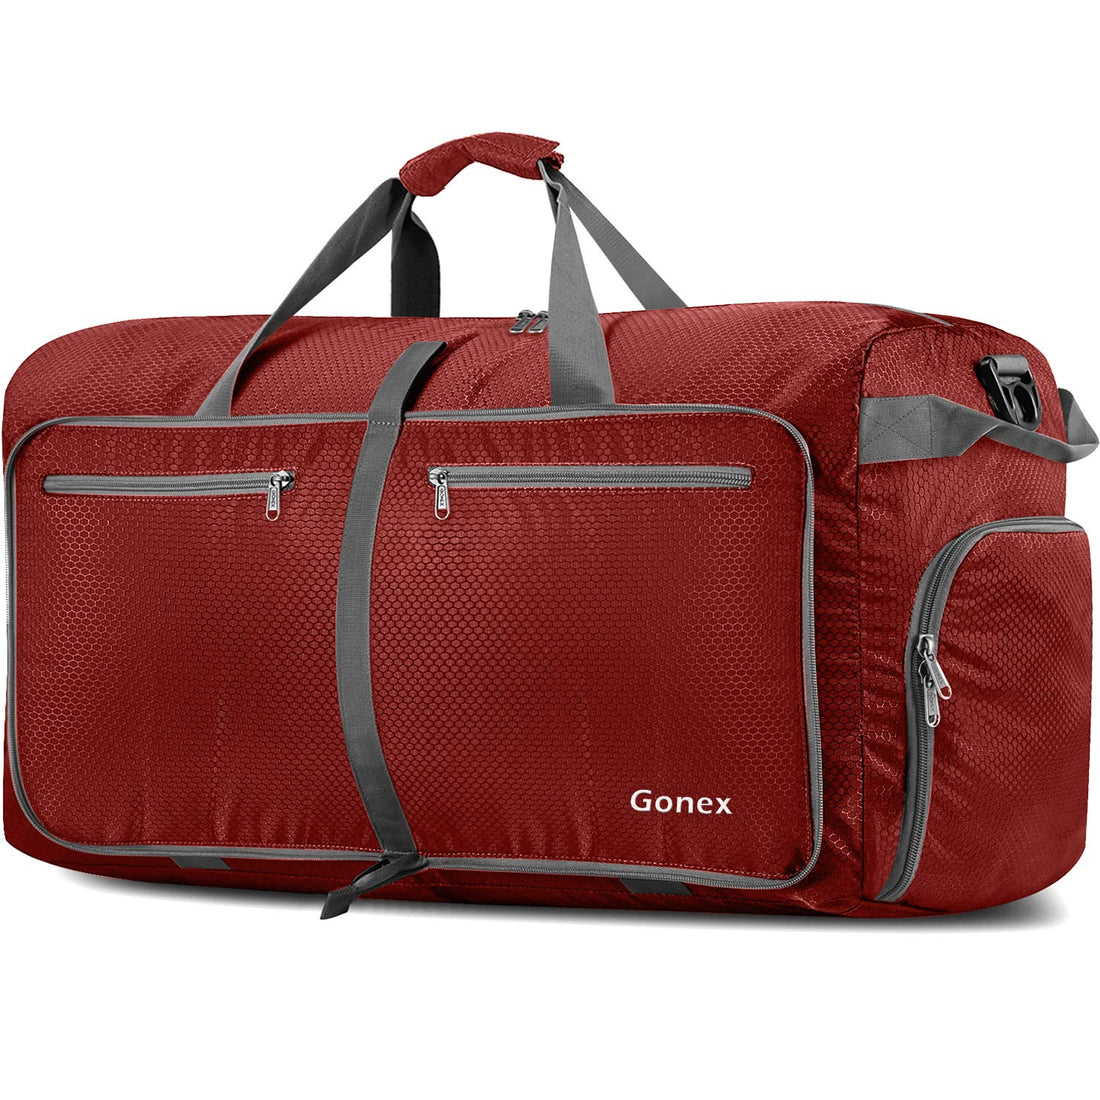 Gonex 80L Weekender Bag Foldable Waterproof Travel Duffel Bag